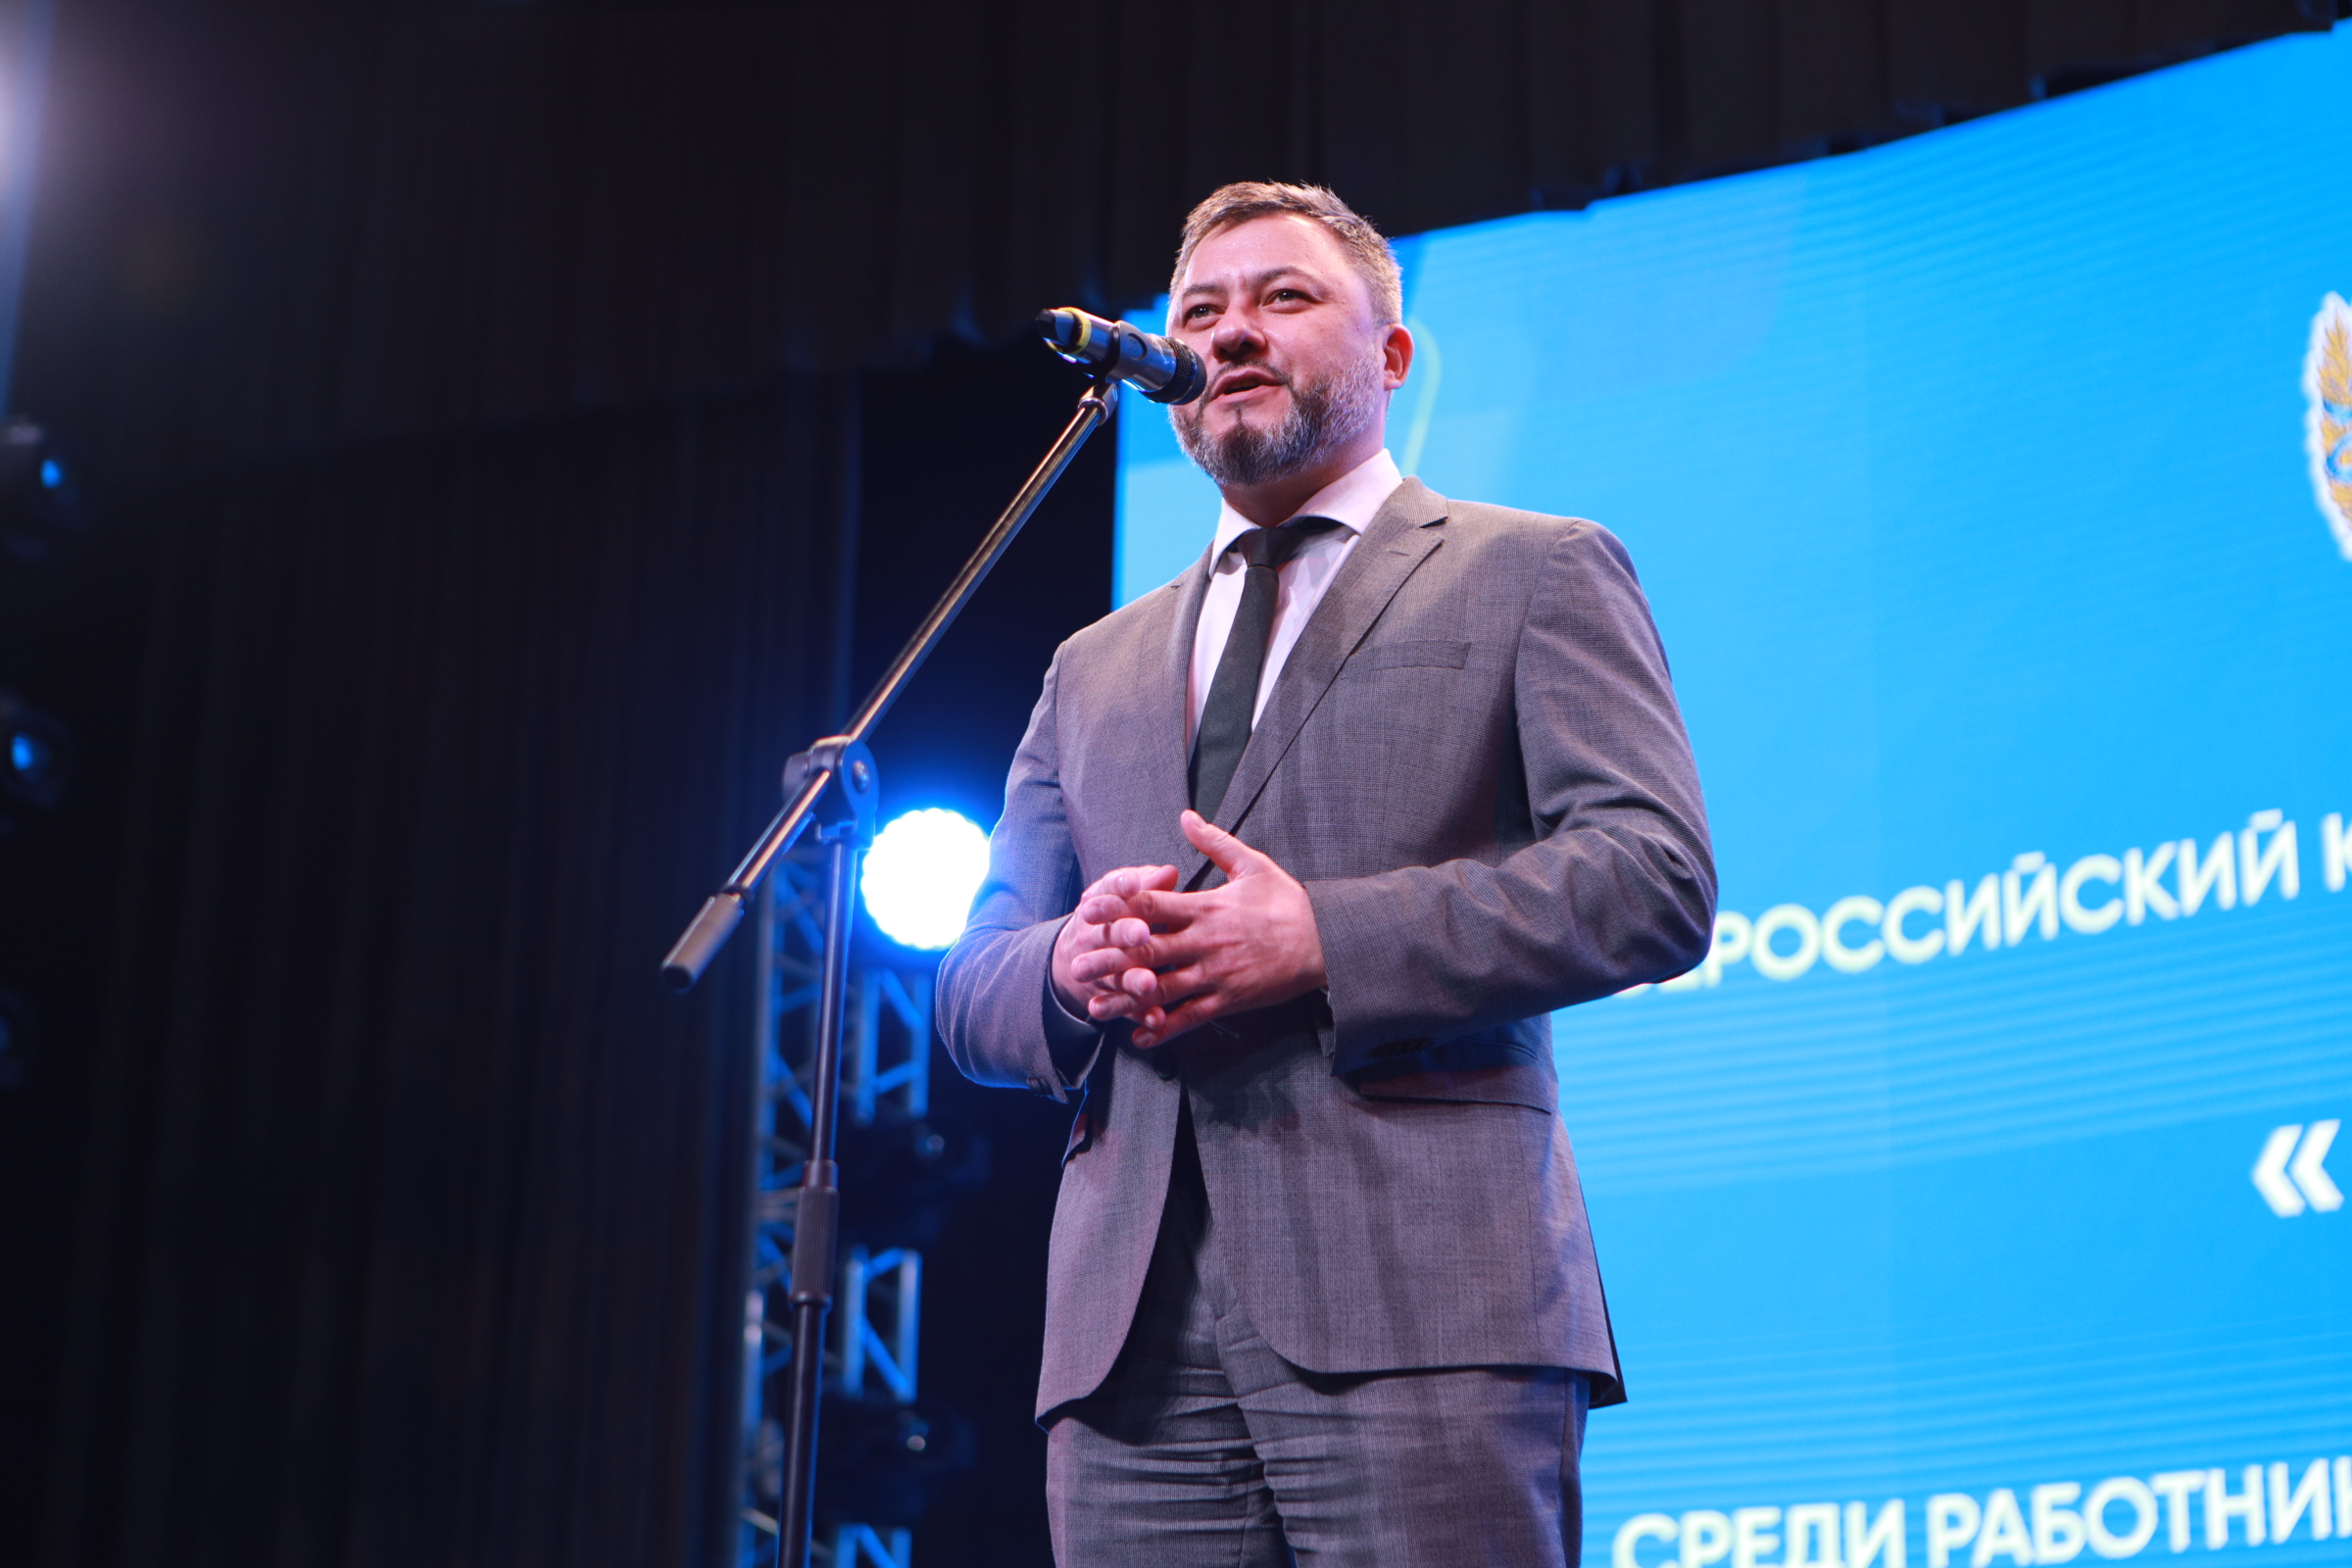 Всероссийский конкурс профессиональных достижений “ИнваПрофи” 2022